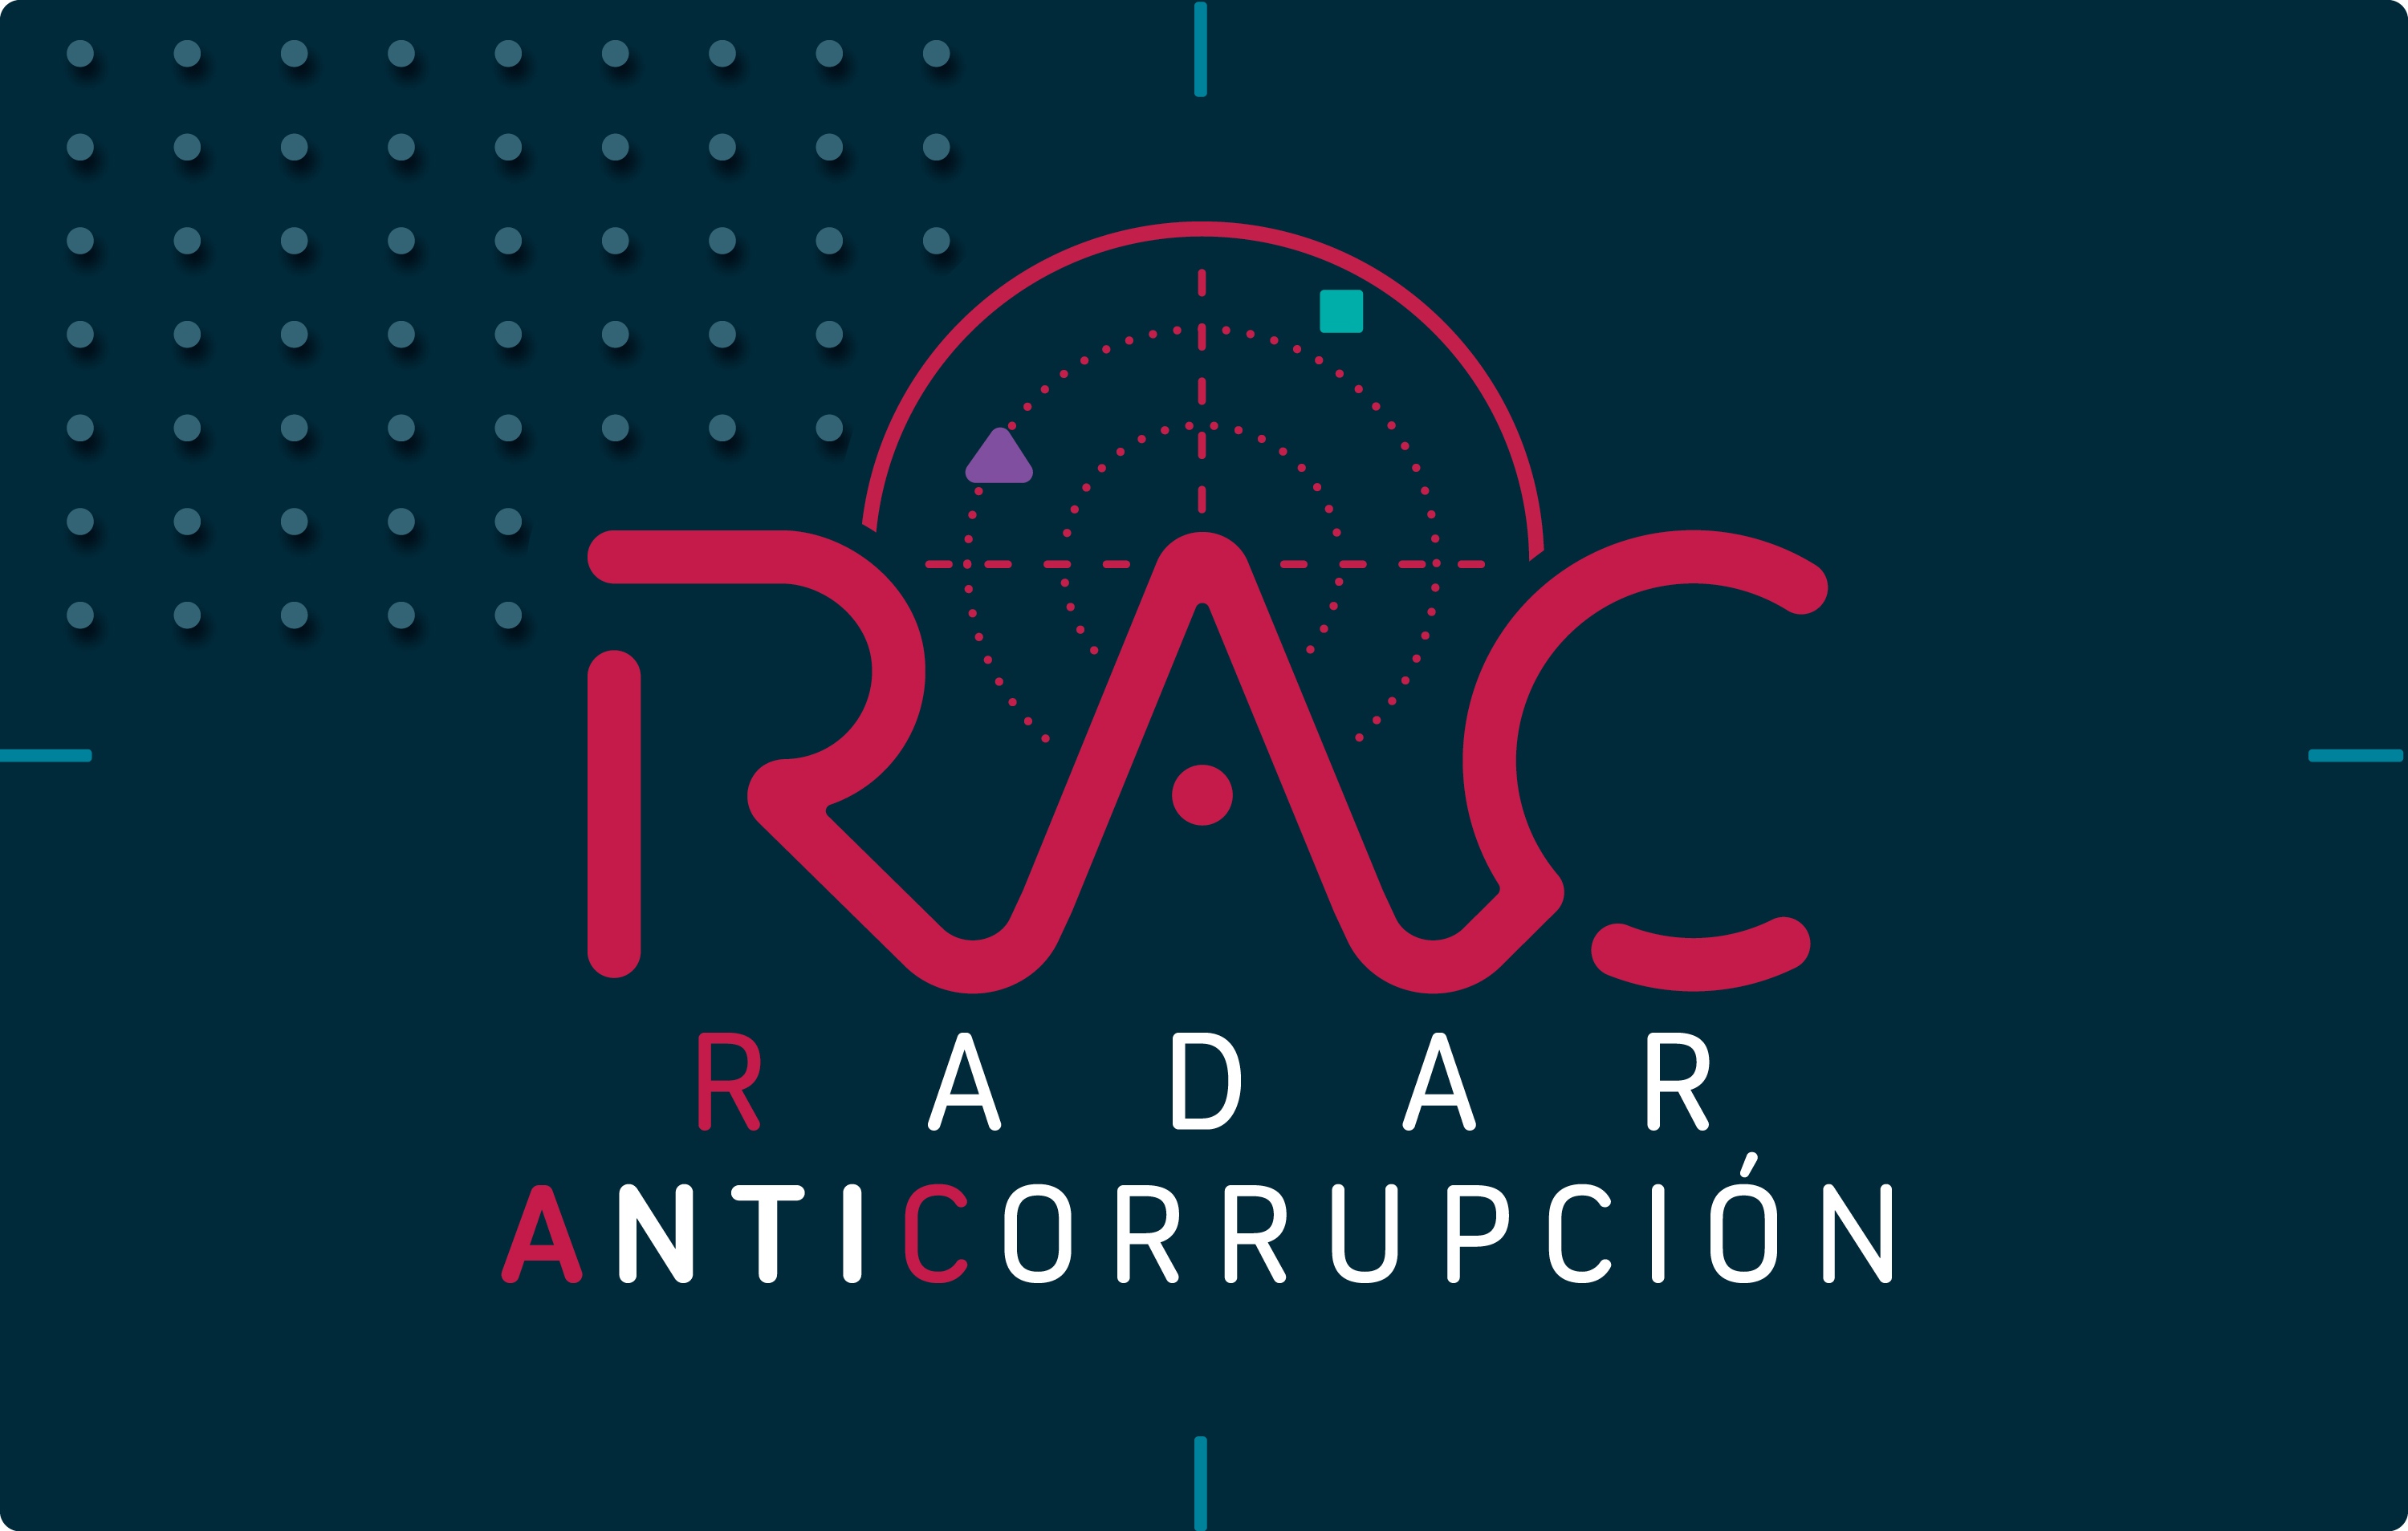 El Radar Anticorrupción (RAC) es una herramienta diseñada para conocer, detectar y promover la denuncia de los posibles actos de corrupción.